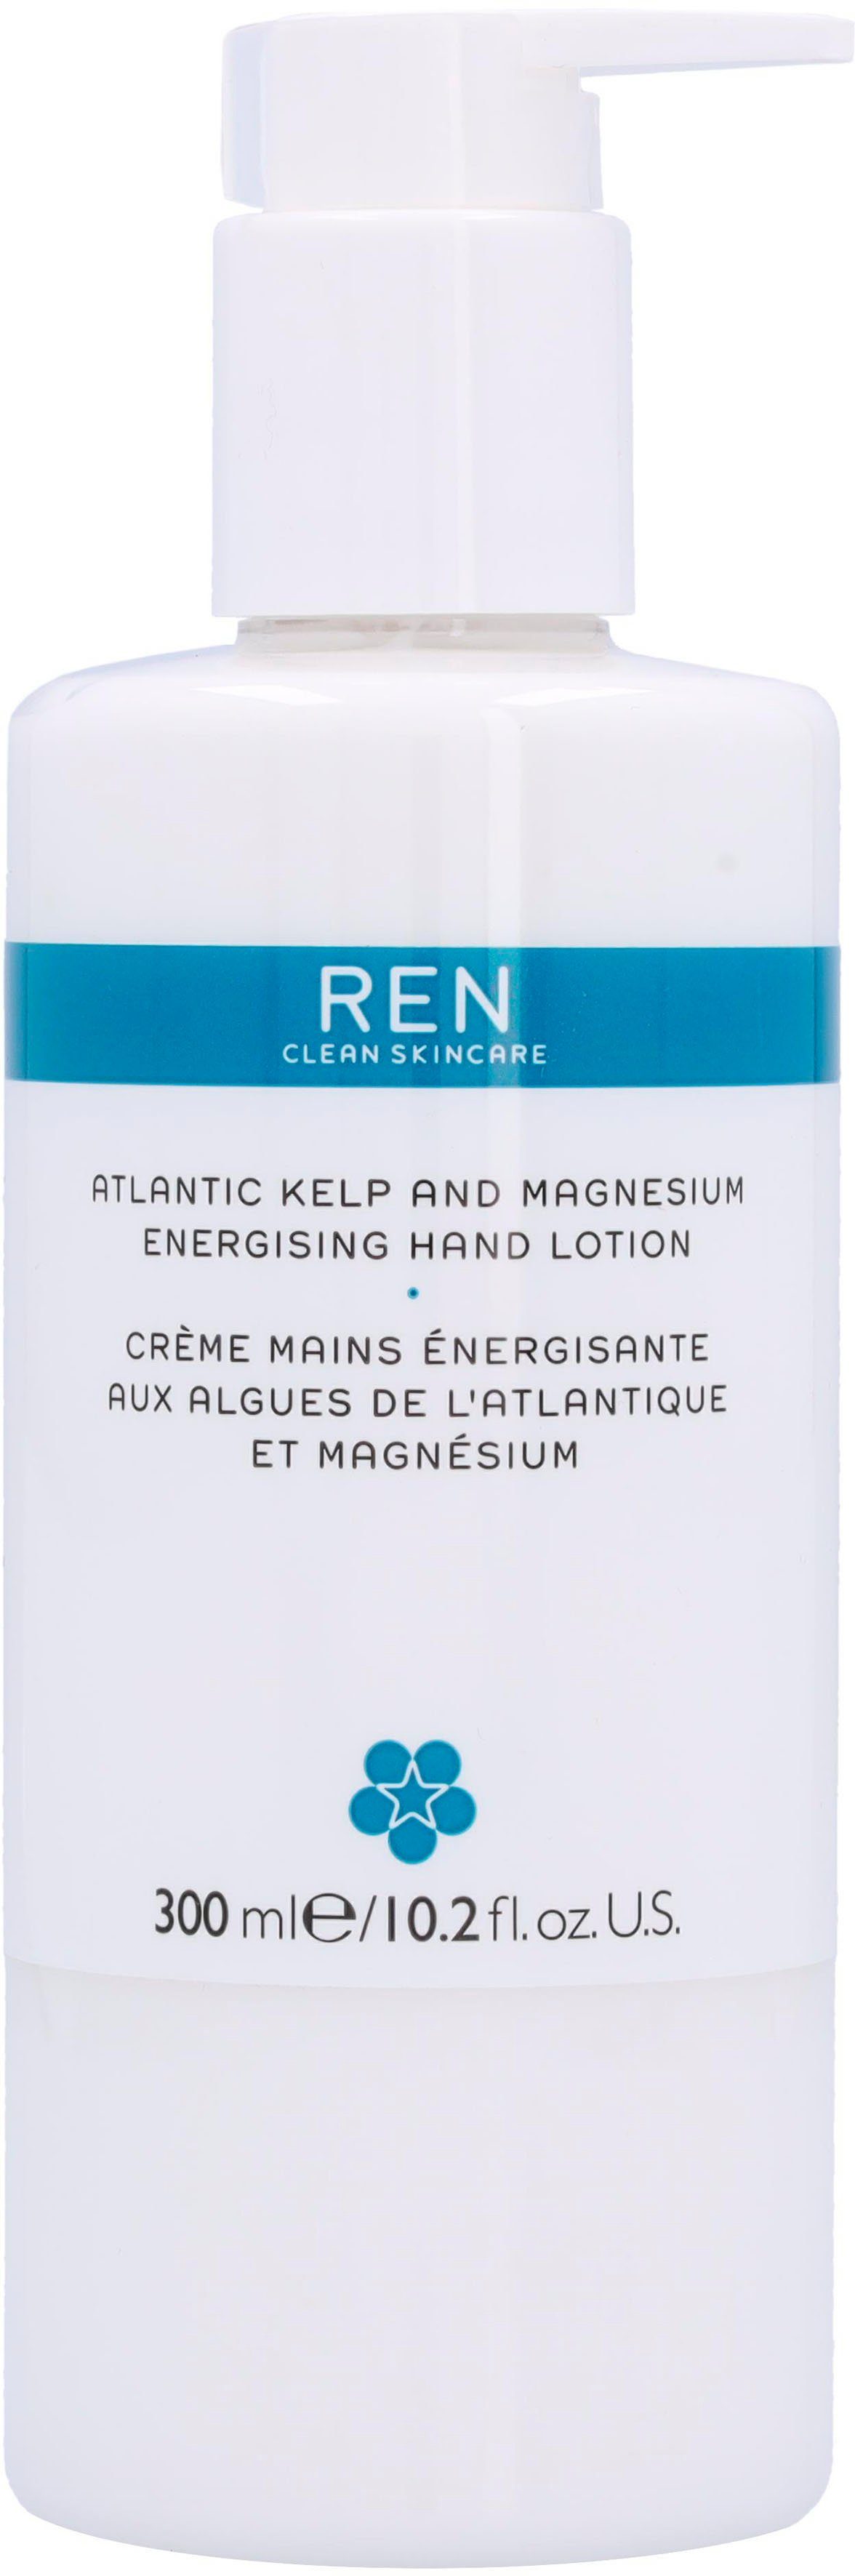 Handlotion Clean Hand REN Atlantic Lotion Energising Kelp Skincare Ren Magnesium And